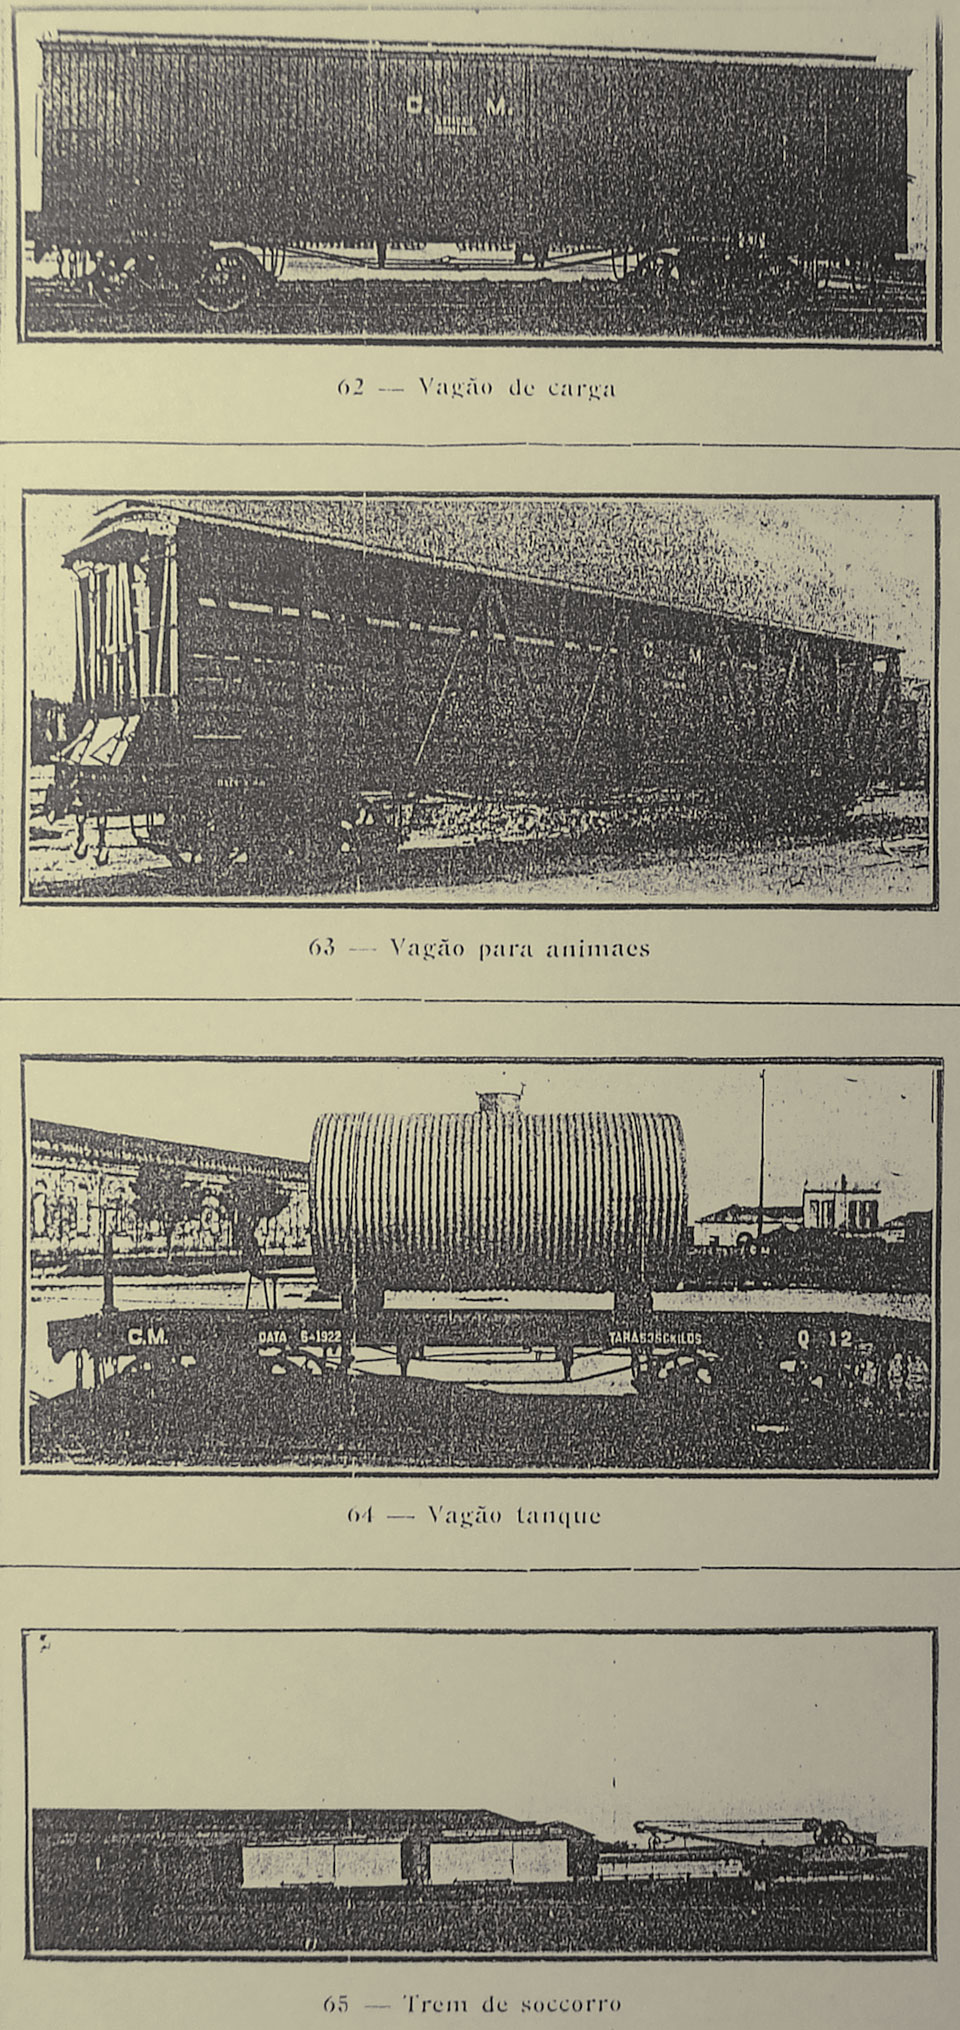 Vagões de carga (fechado), de animais, vagão tanque e trem de socorro